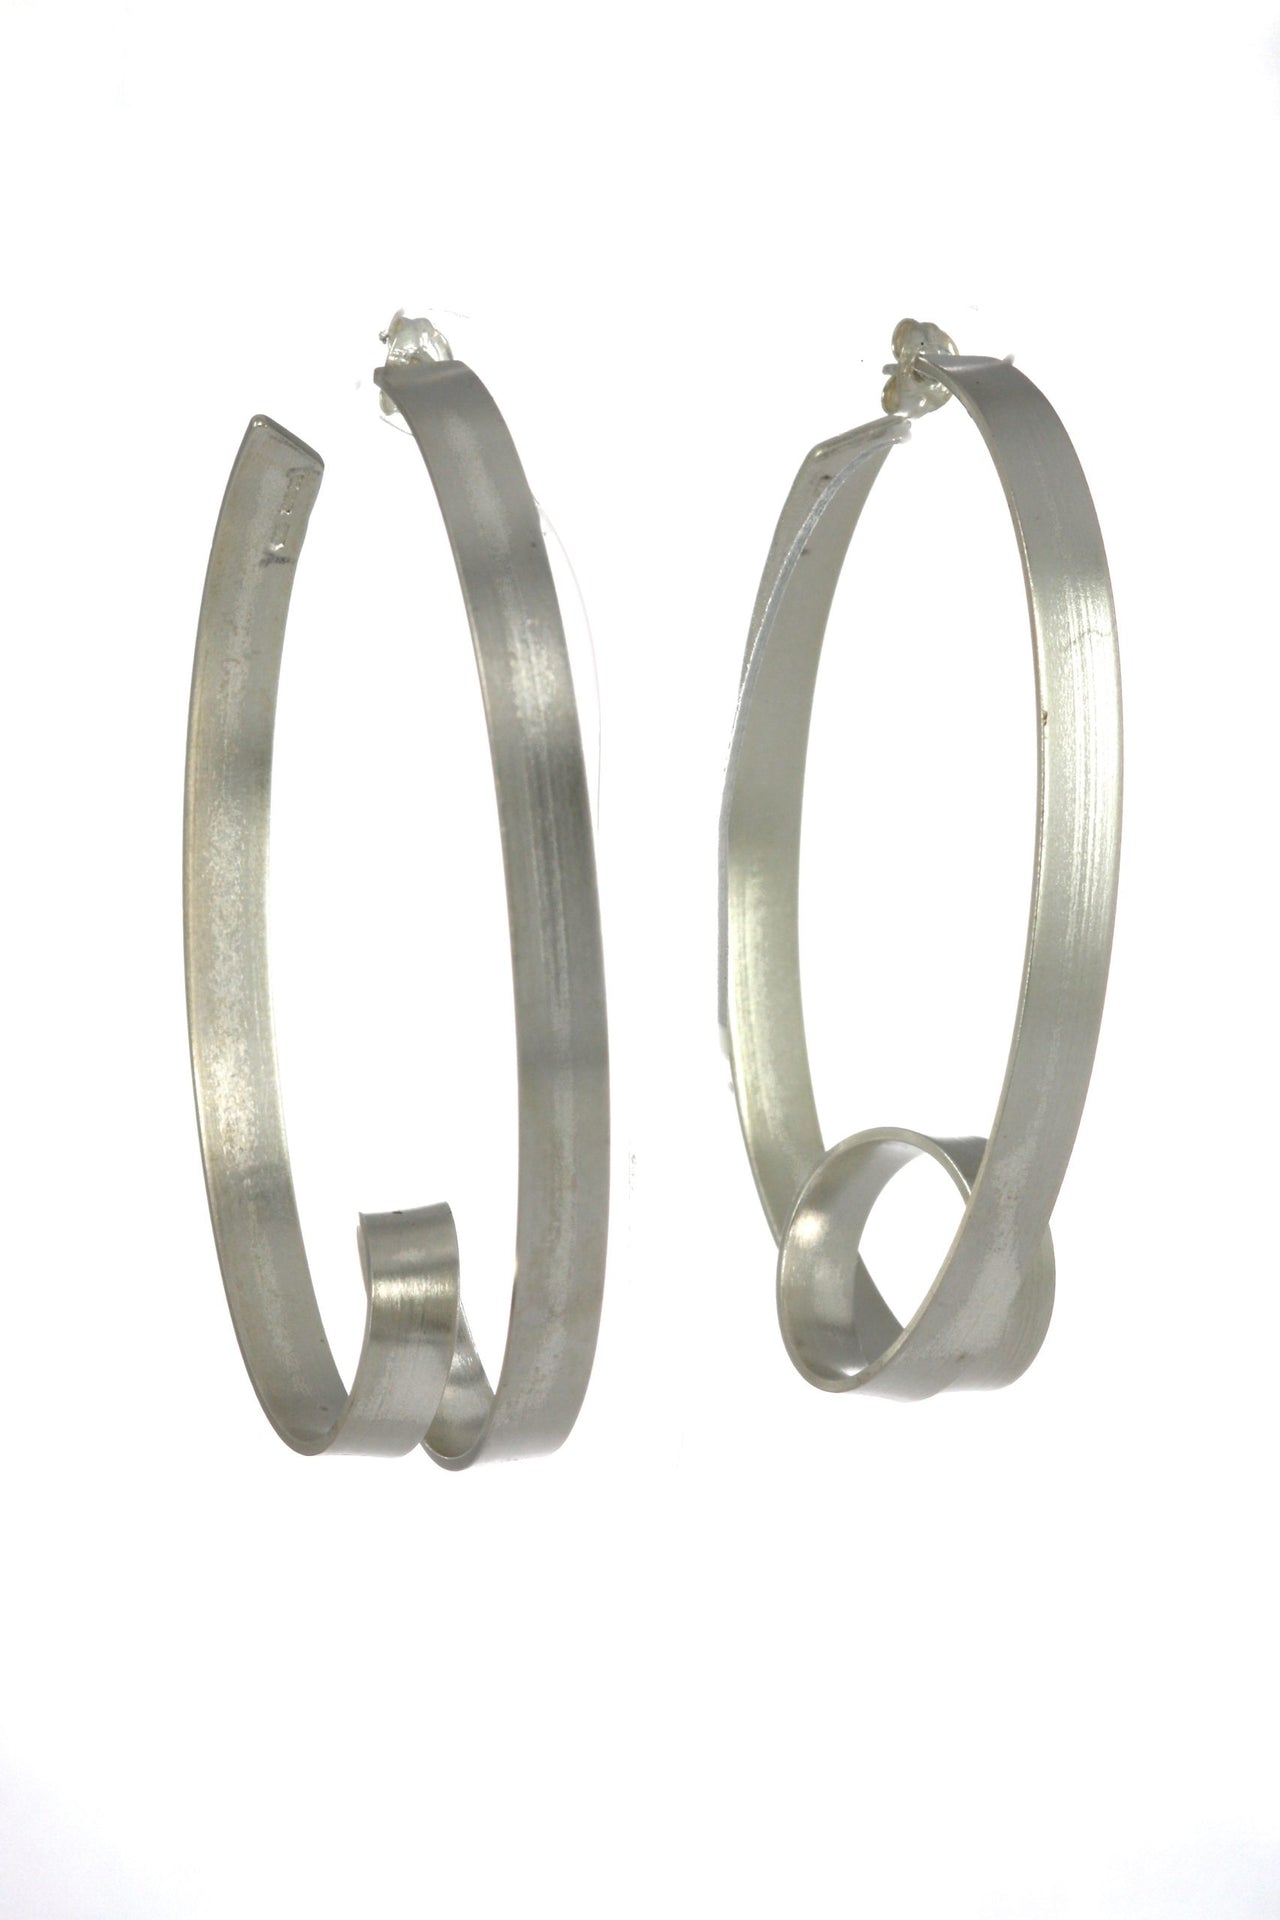 Ribbon Oval Loop Earrings - Large